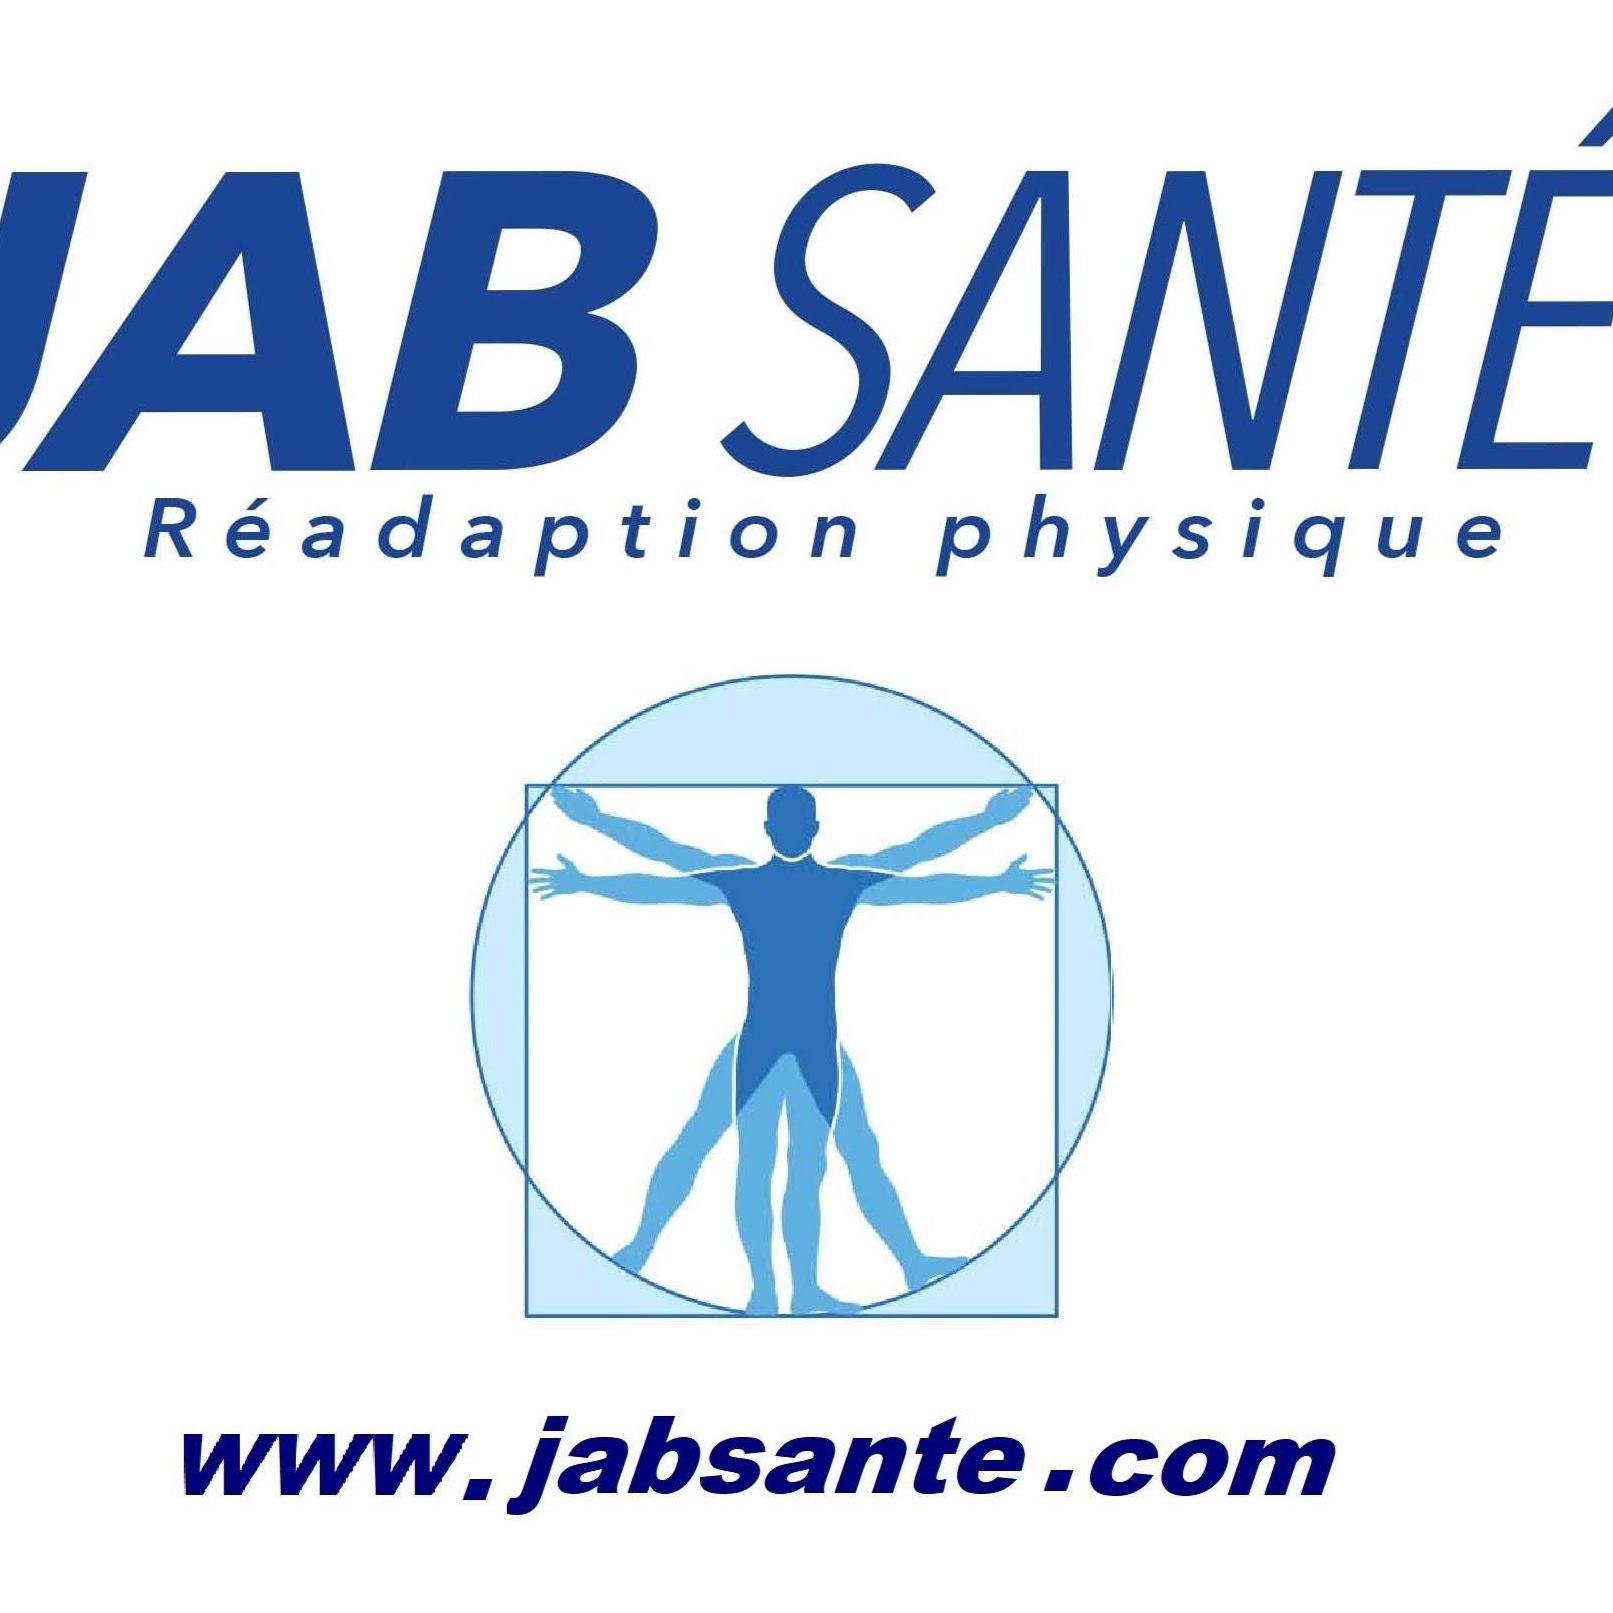 JAB Santé MTL - Thérapie du sport & services santé